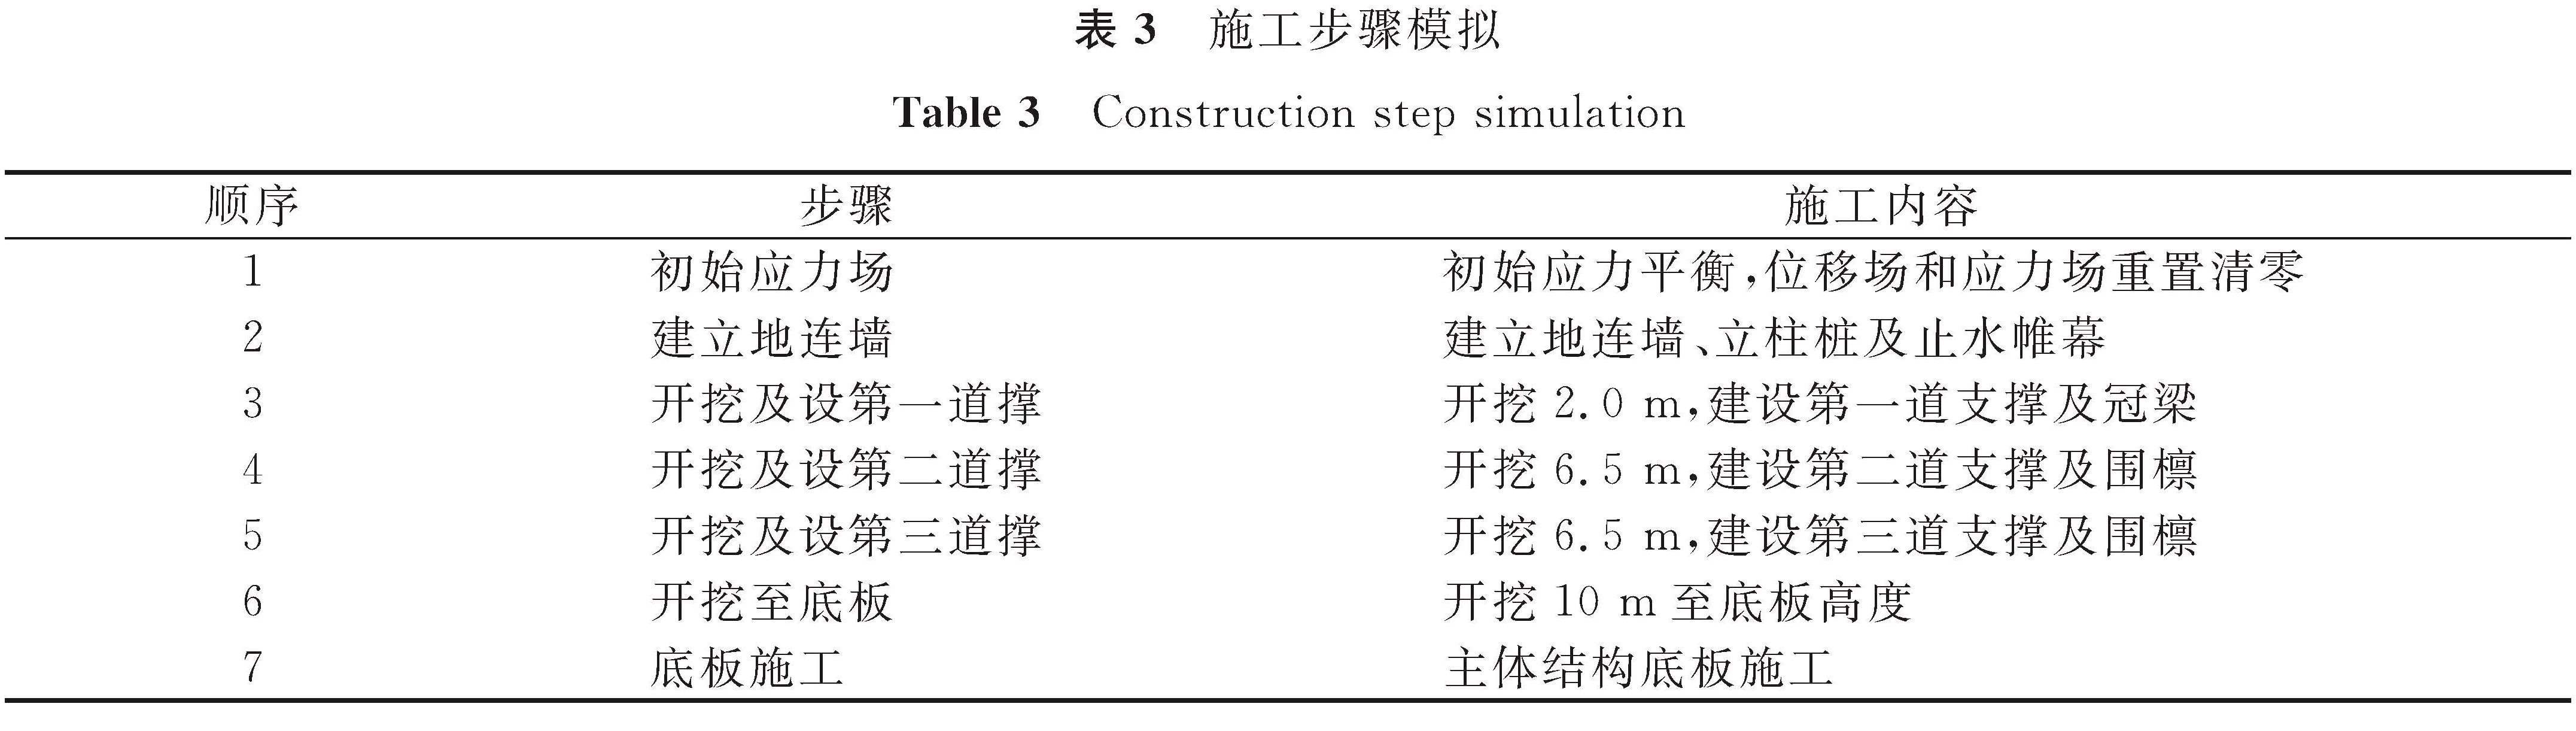 表3 施工步骤模拟<br/>Table 3 Construction step simulation